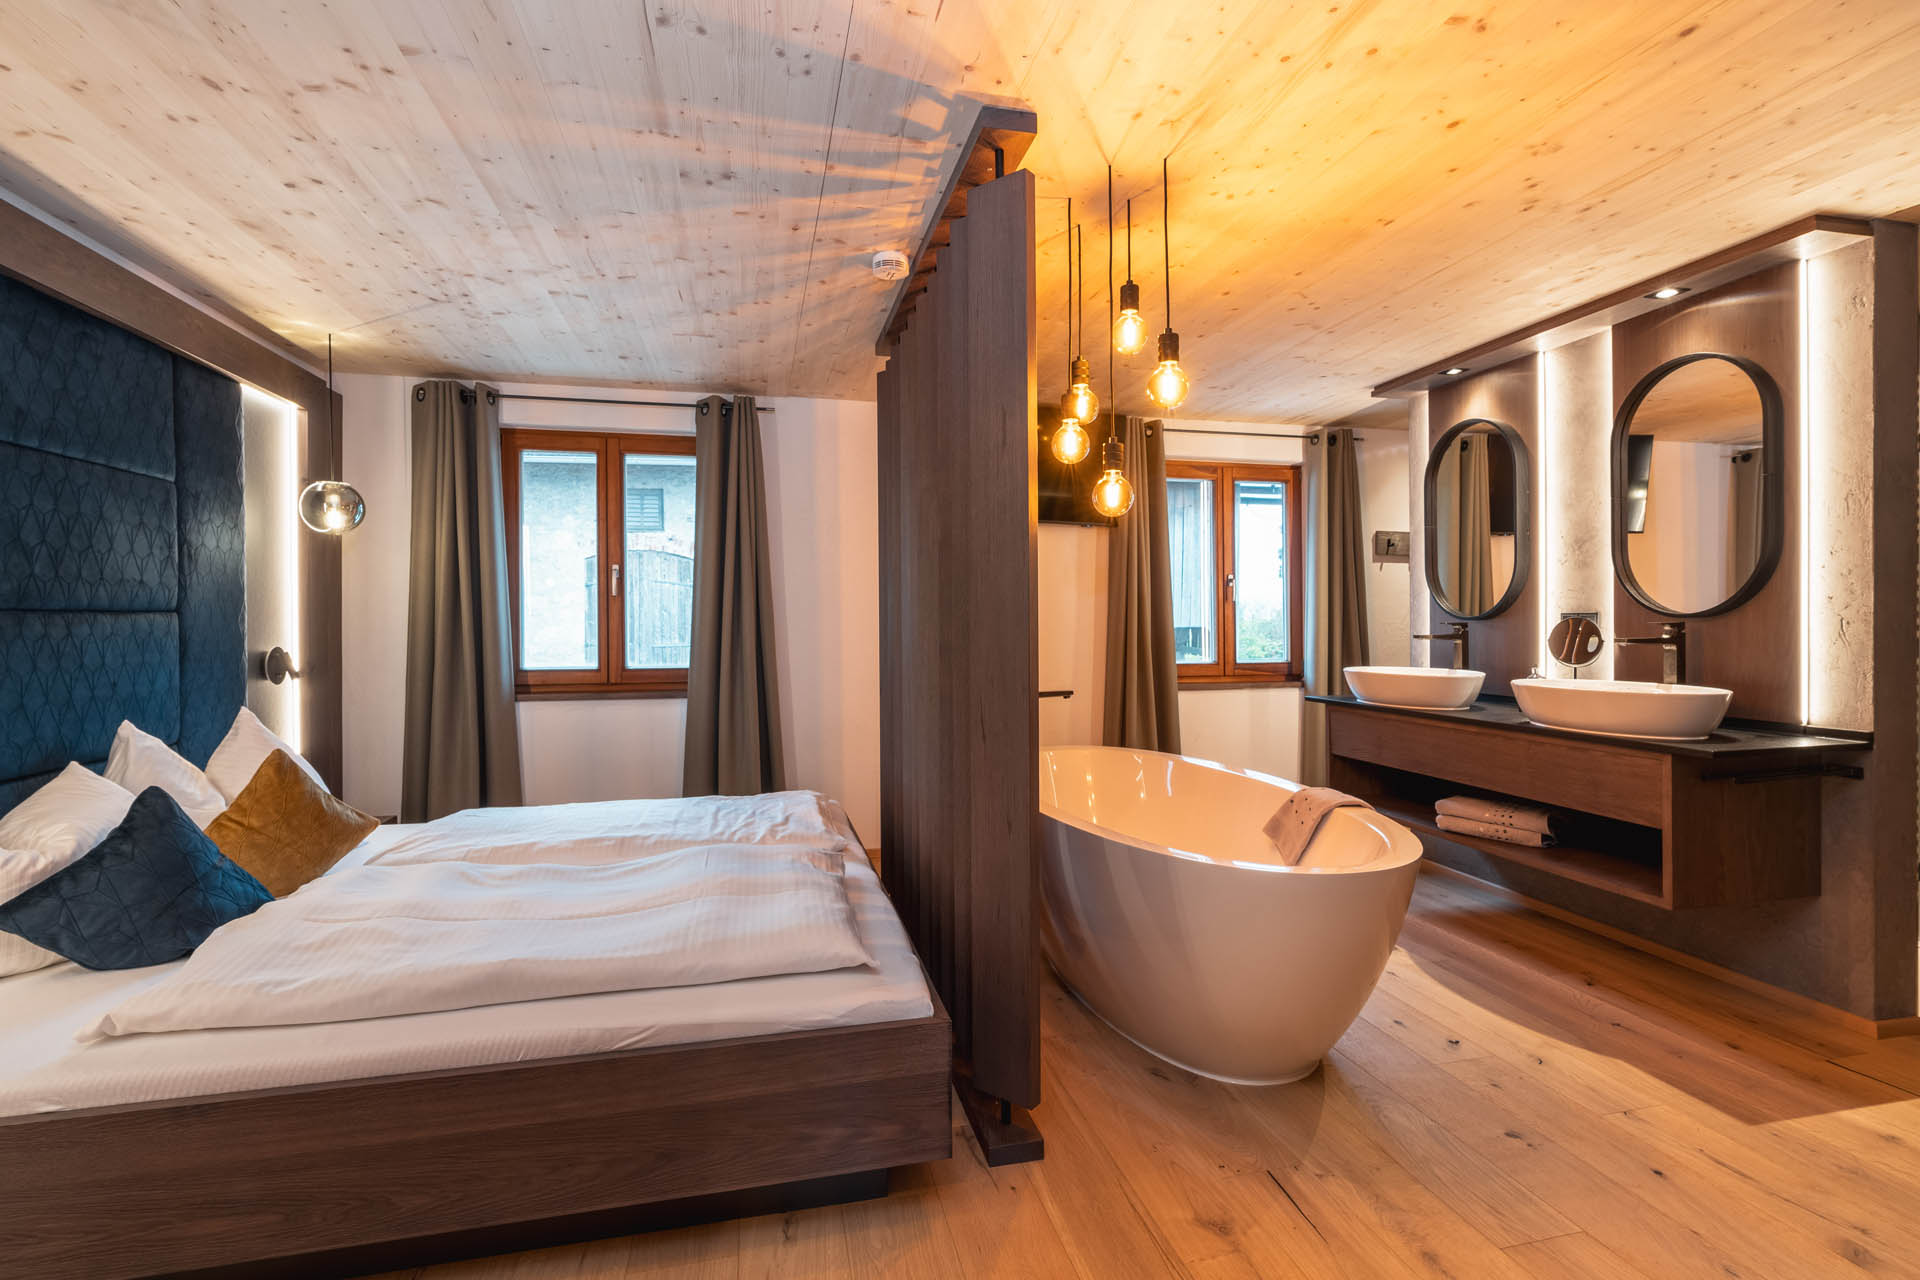 Huberhof Ollerding, Ferienwohnung Kornblume Blick auf Badezimmer und Schlafzimmer